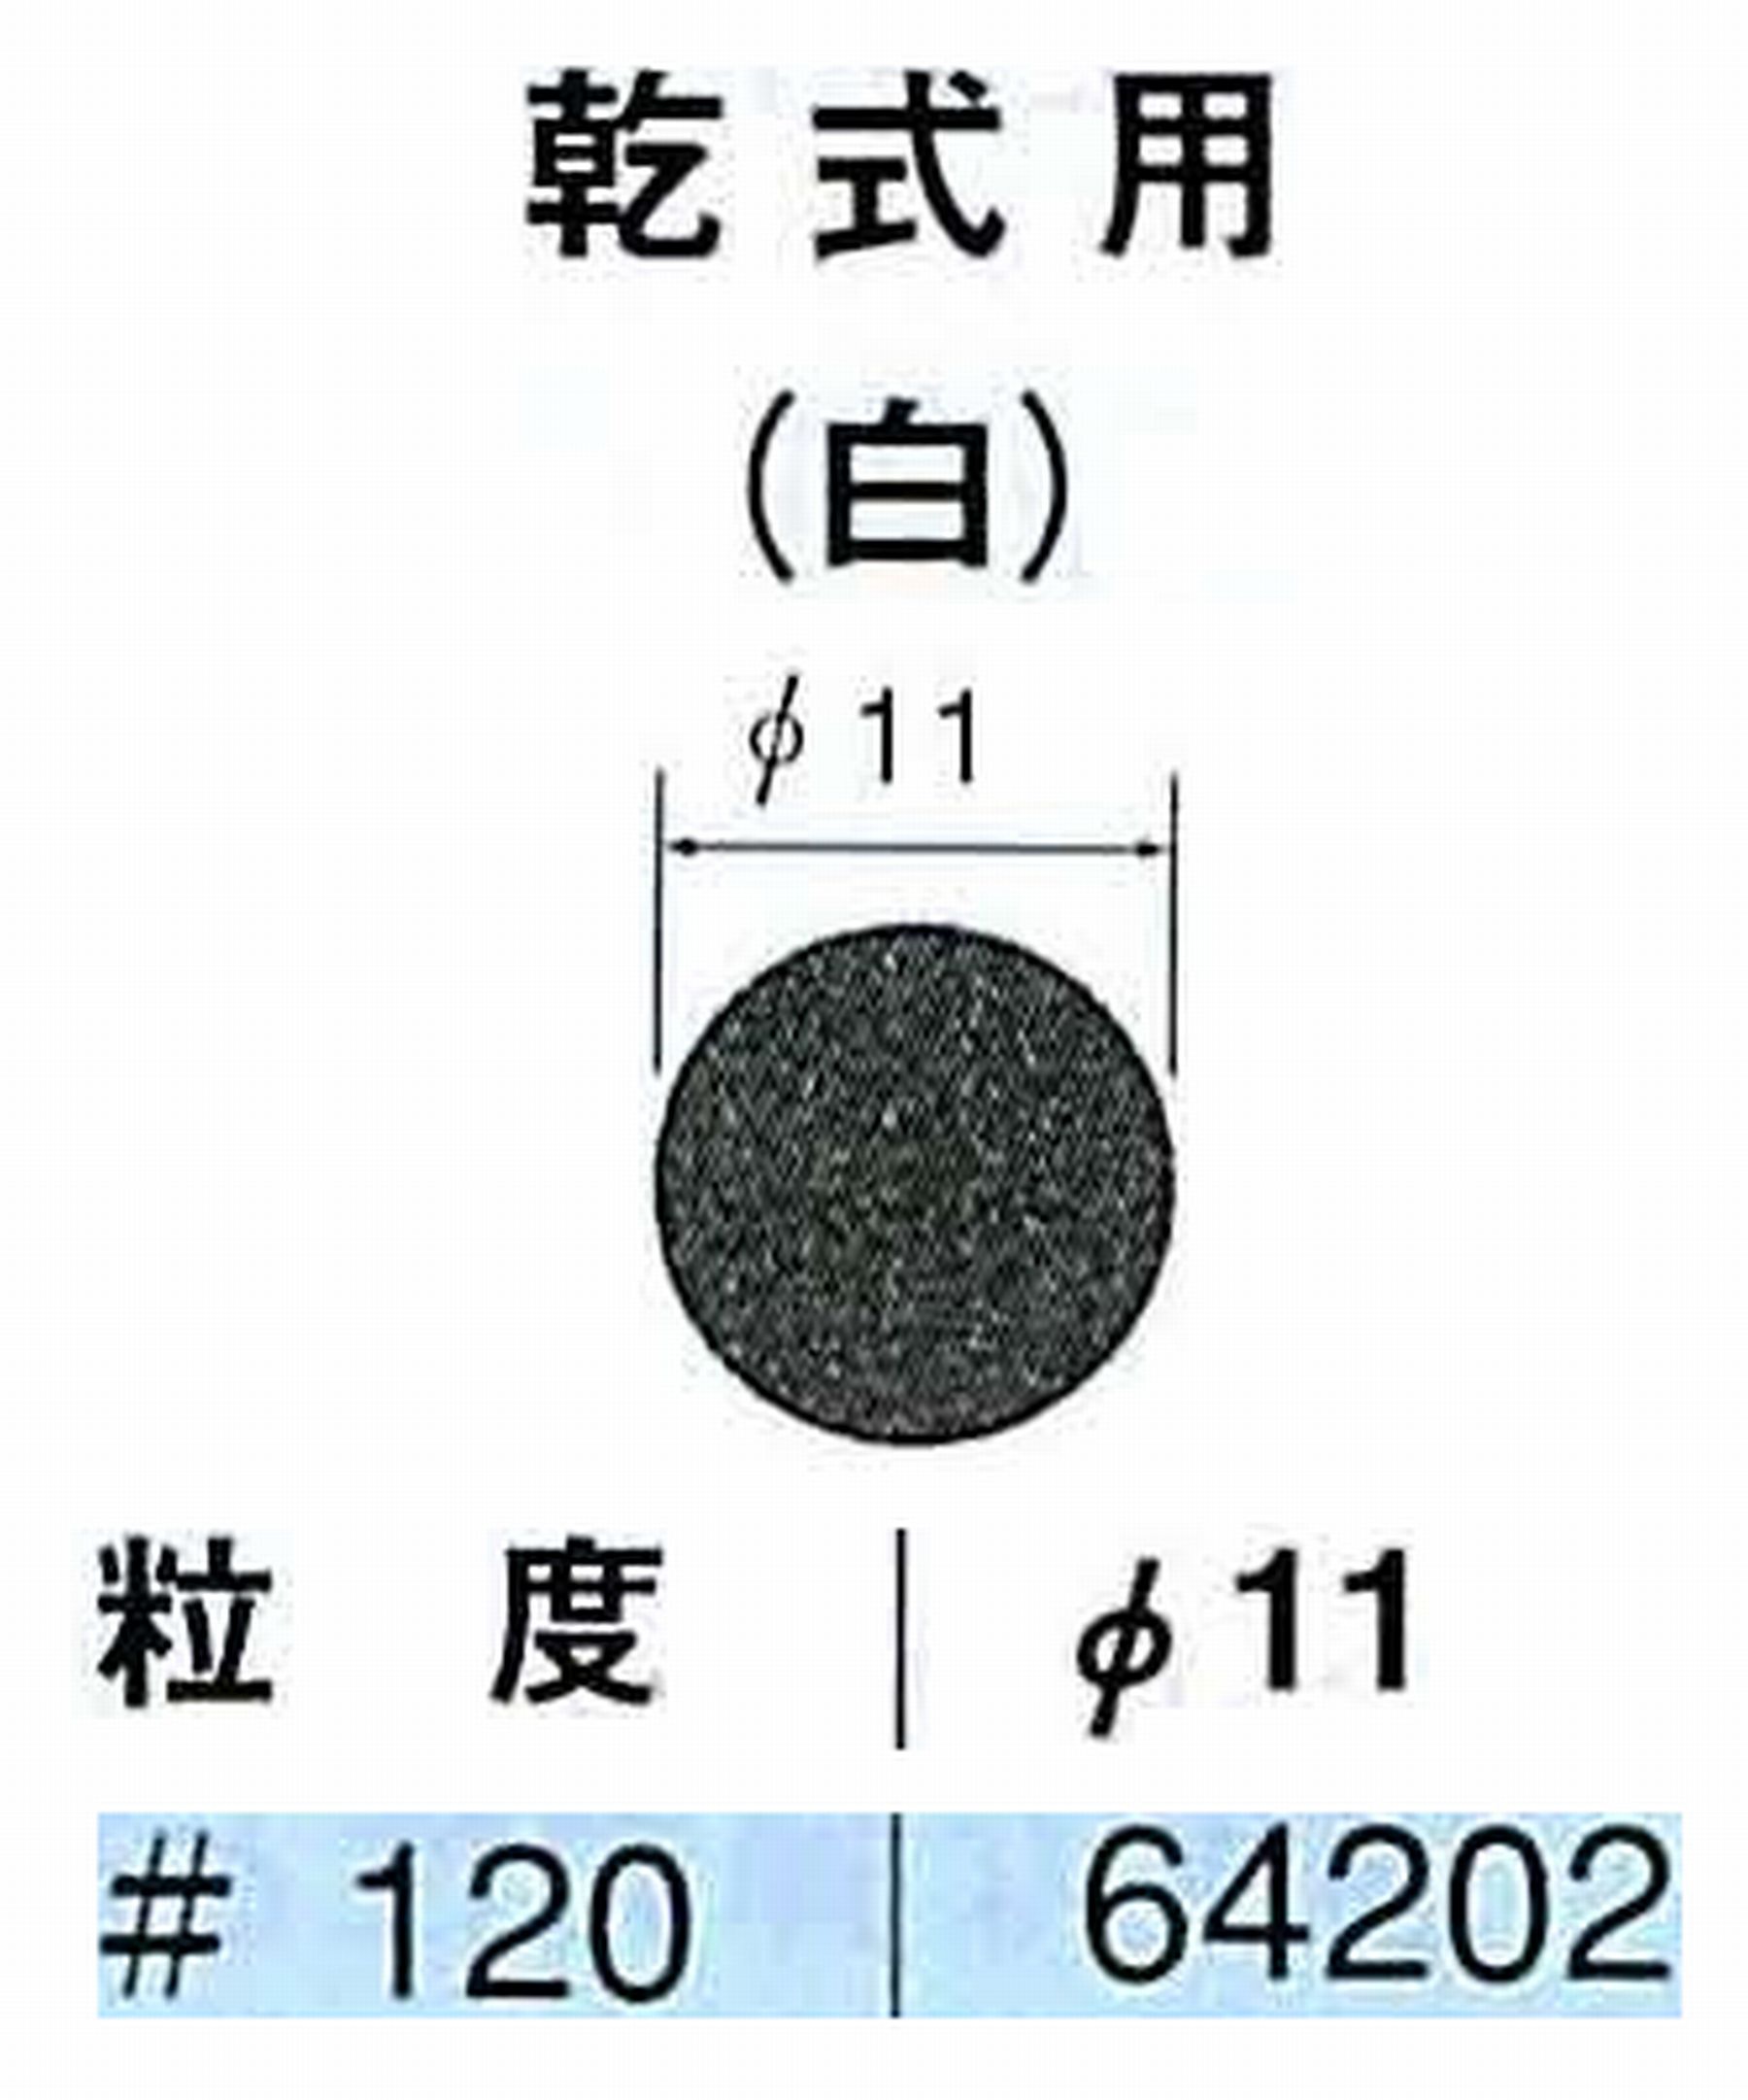 ナカニシ/NAKANISHI アングルグラインダ(電動・エアー) アングルアタッチメント専用工具 サンドペーパーディスク(紙基材タイプ)裏面のり処理 64202